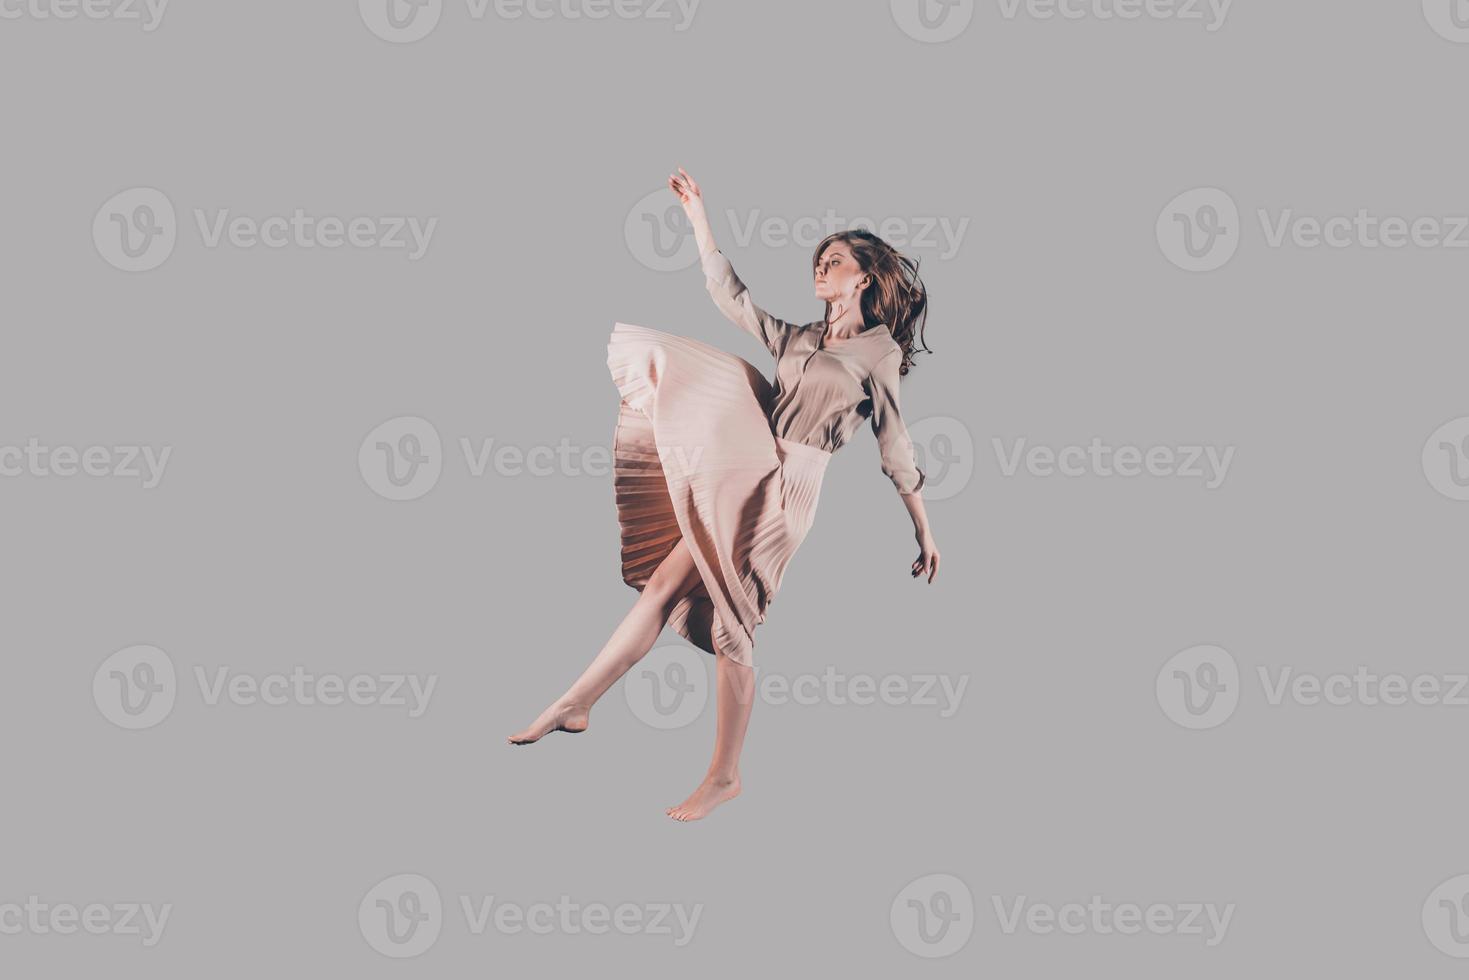 zweven in de lucht. studio schot van aantrekkelijk jong vrouw zweven in lucht foto